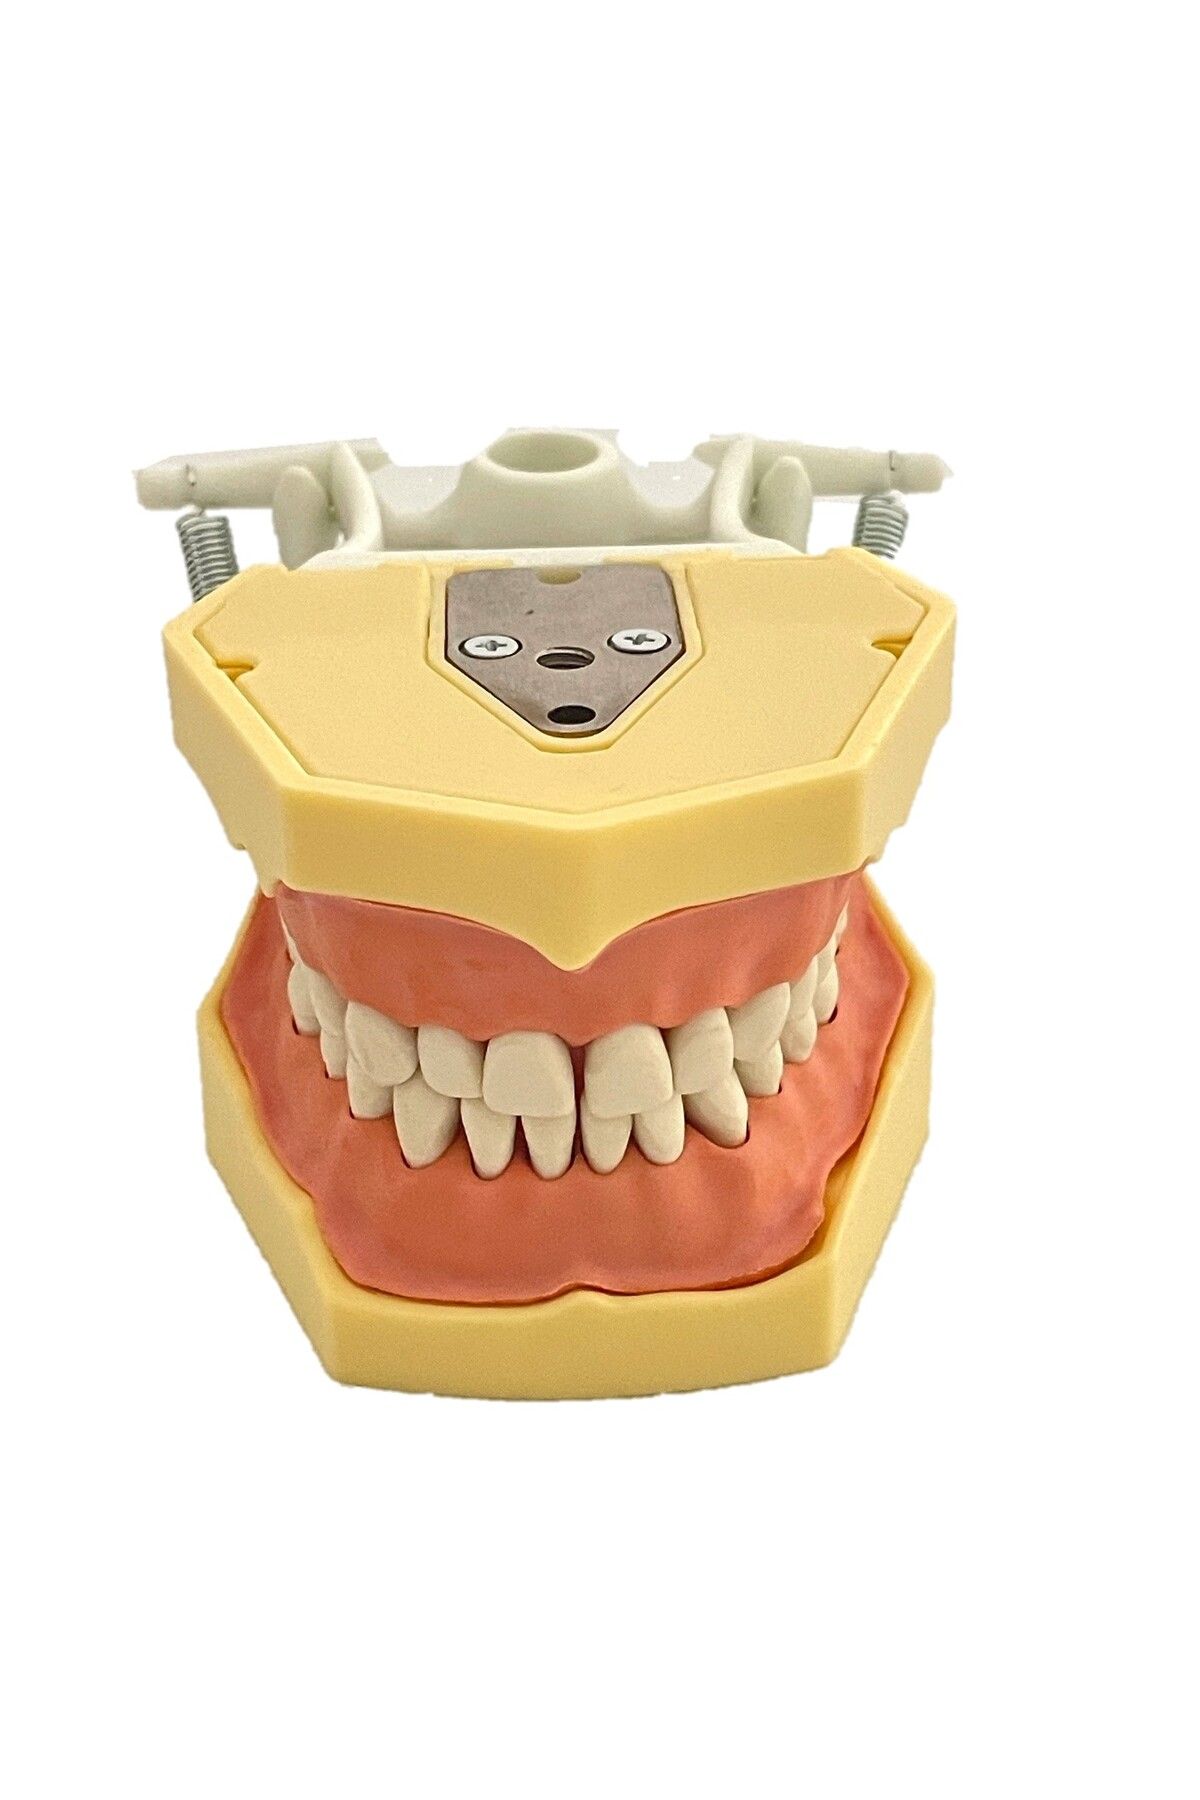 POLYWAX Fuji Uyumlu Çene Çalışma Modeli, Diş Hekimliği Fak. Öğrencileri Eğitimi Için,32 Dişli (BLK3420)